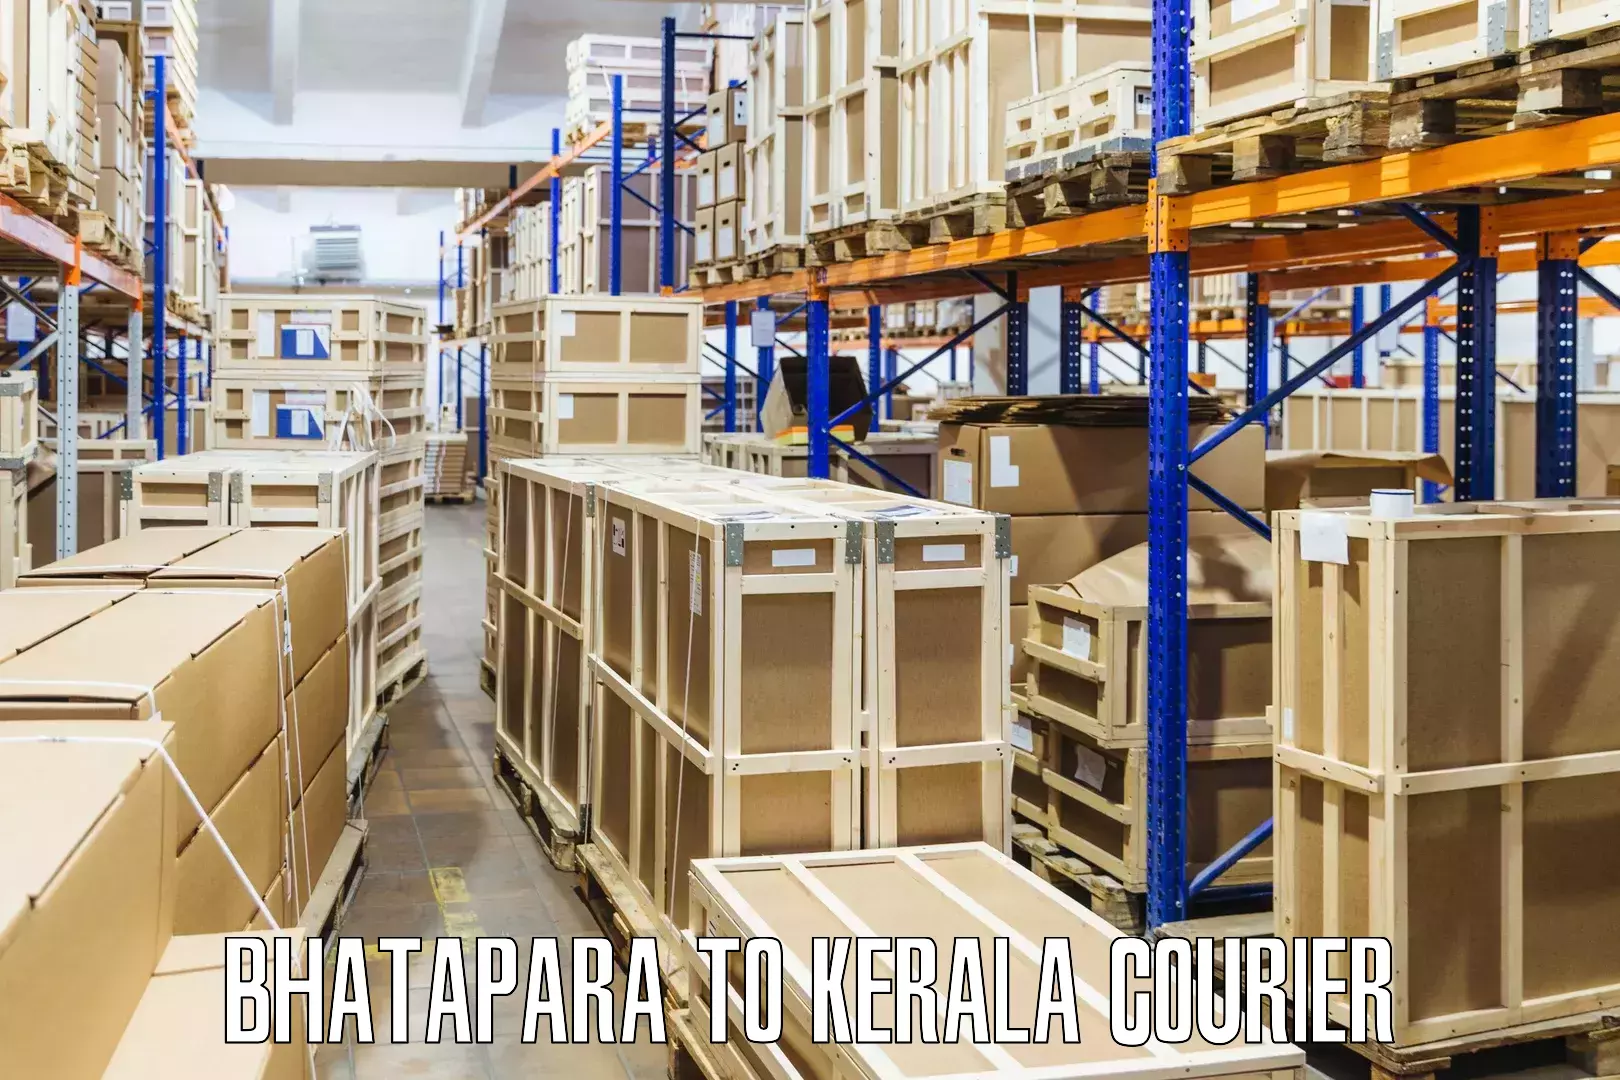 Courier service innovation Bhatapara to Kalluvathukkal